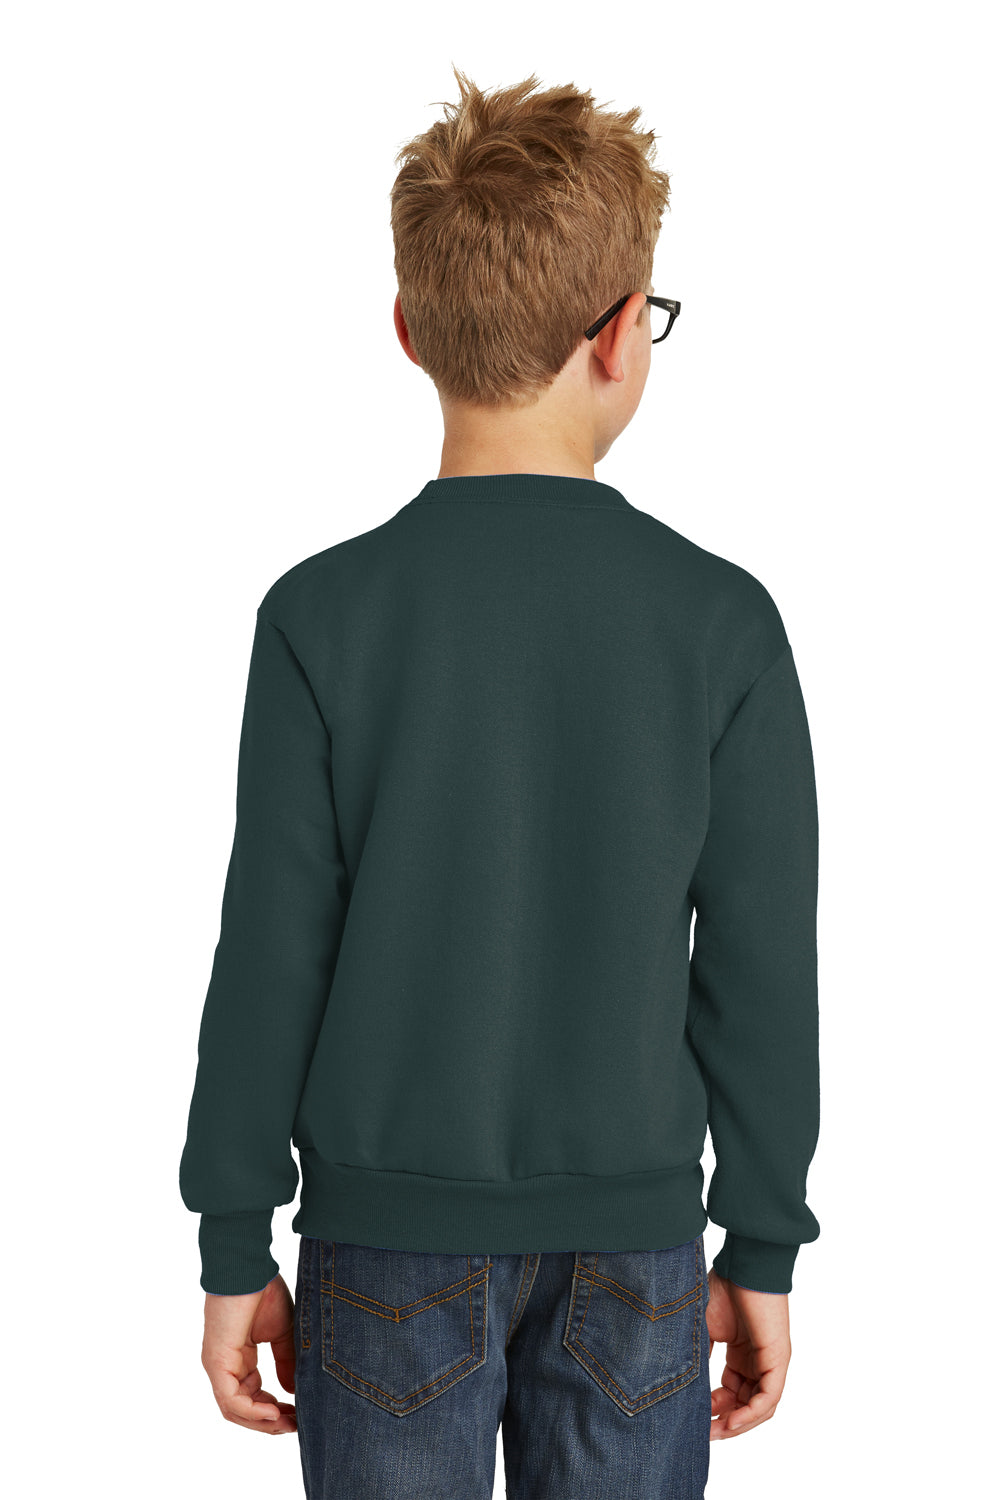 Port & Company PC90Y Youth Core Fleece Crewneck Sweatshirt Dark Green Back